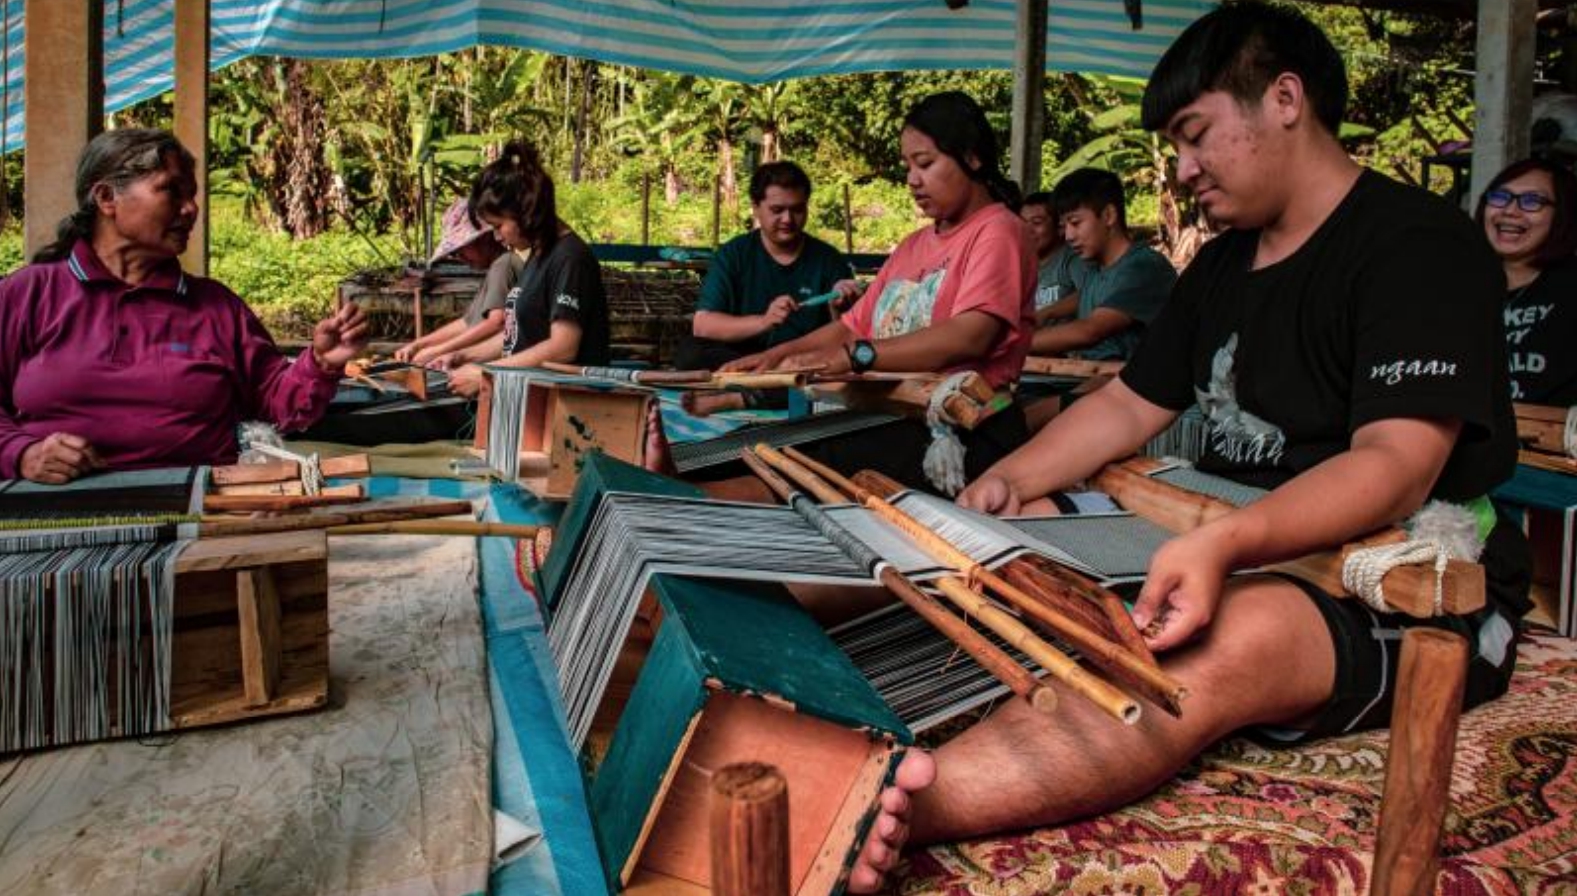 vuvu的記憶技藝工作坊讓原住民學生傳承與保存布農族織布文化技藝